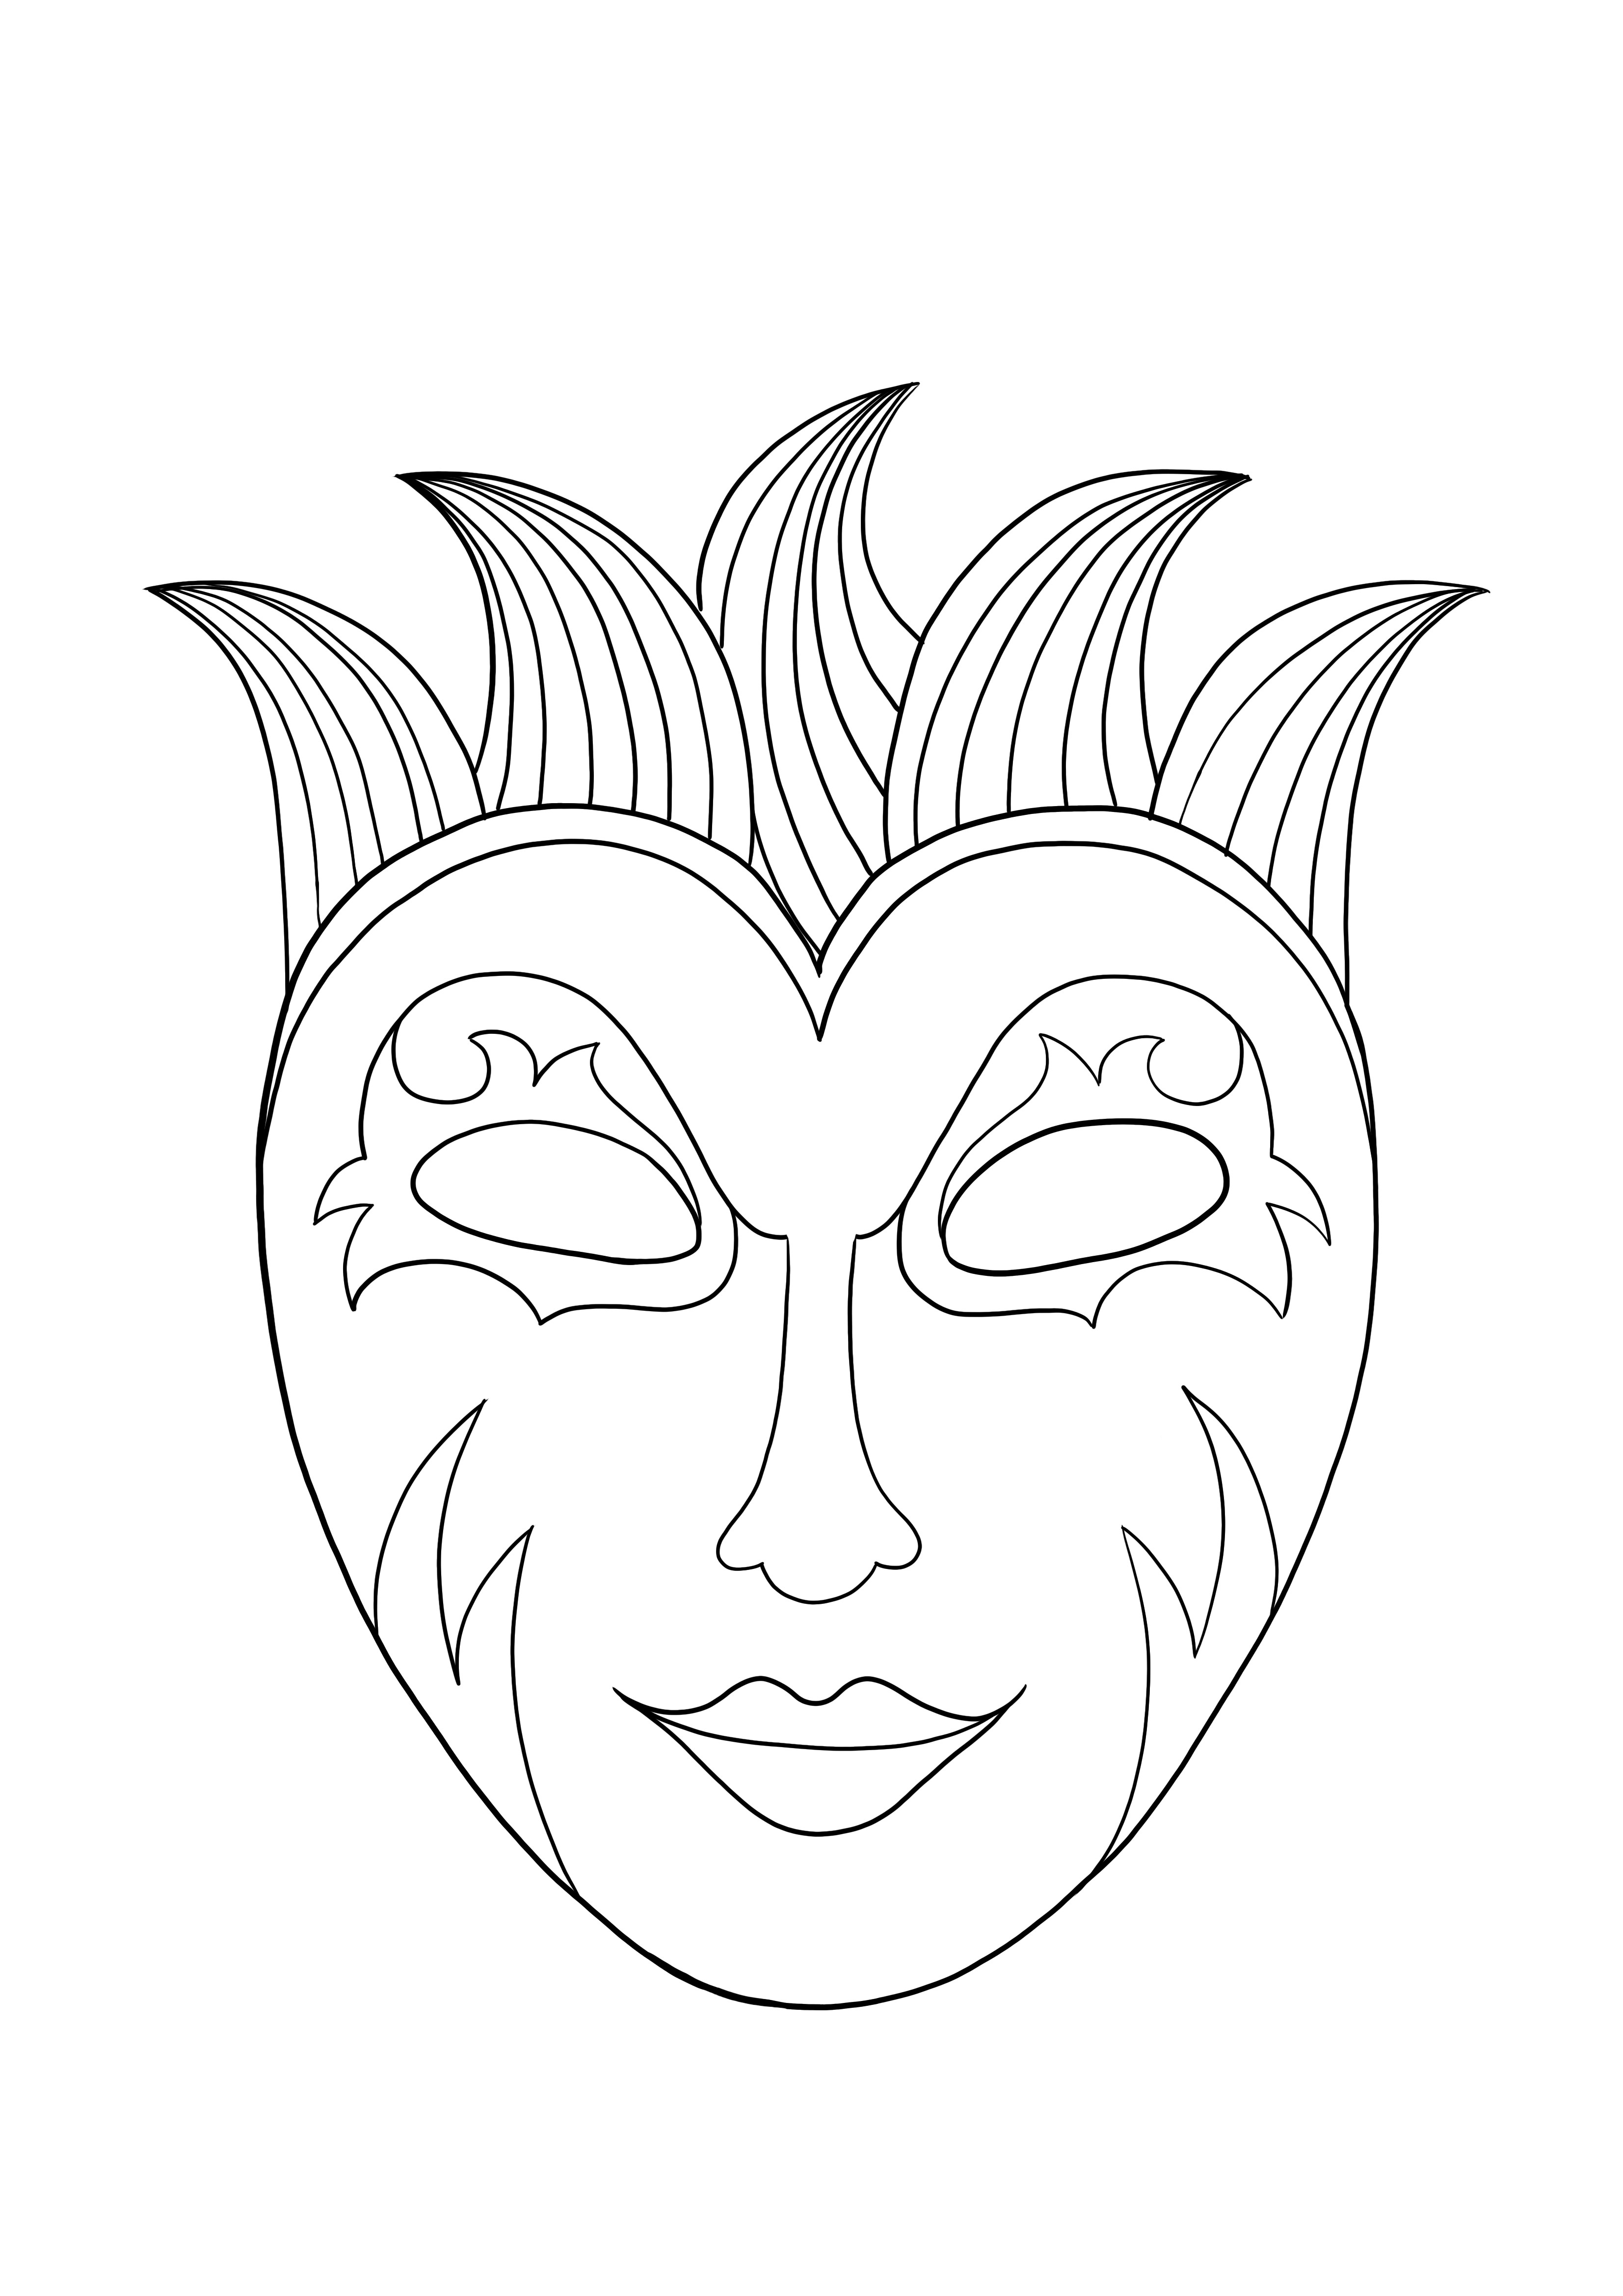 Download gratuito della maschera del Mardi Gras e foglio da colorare